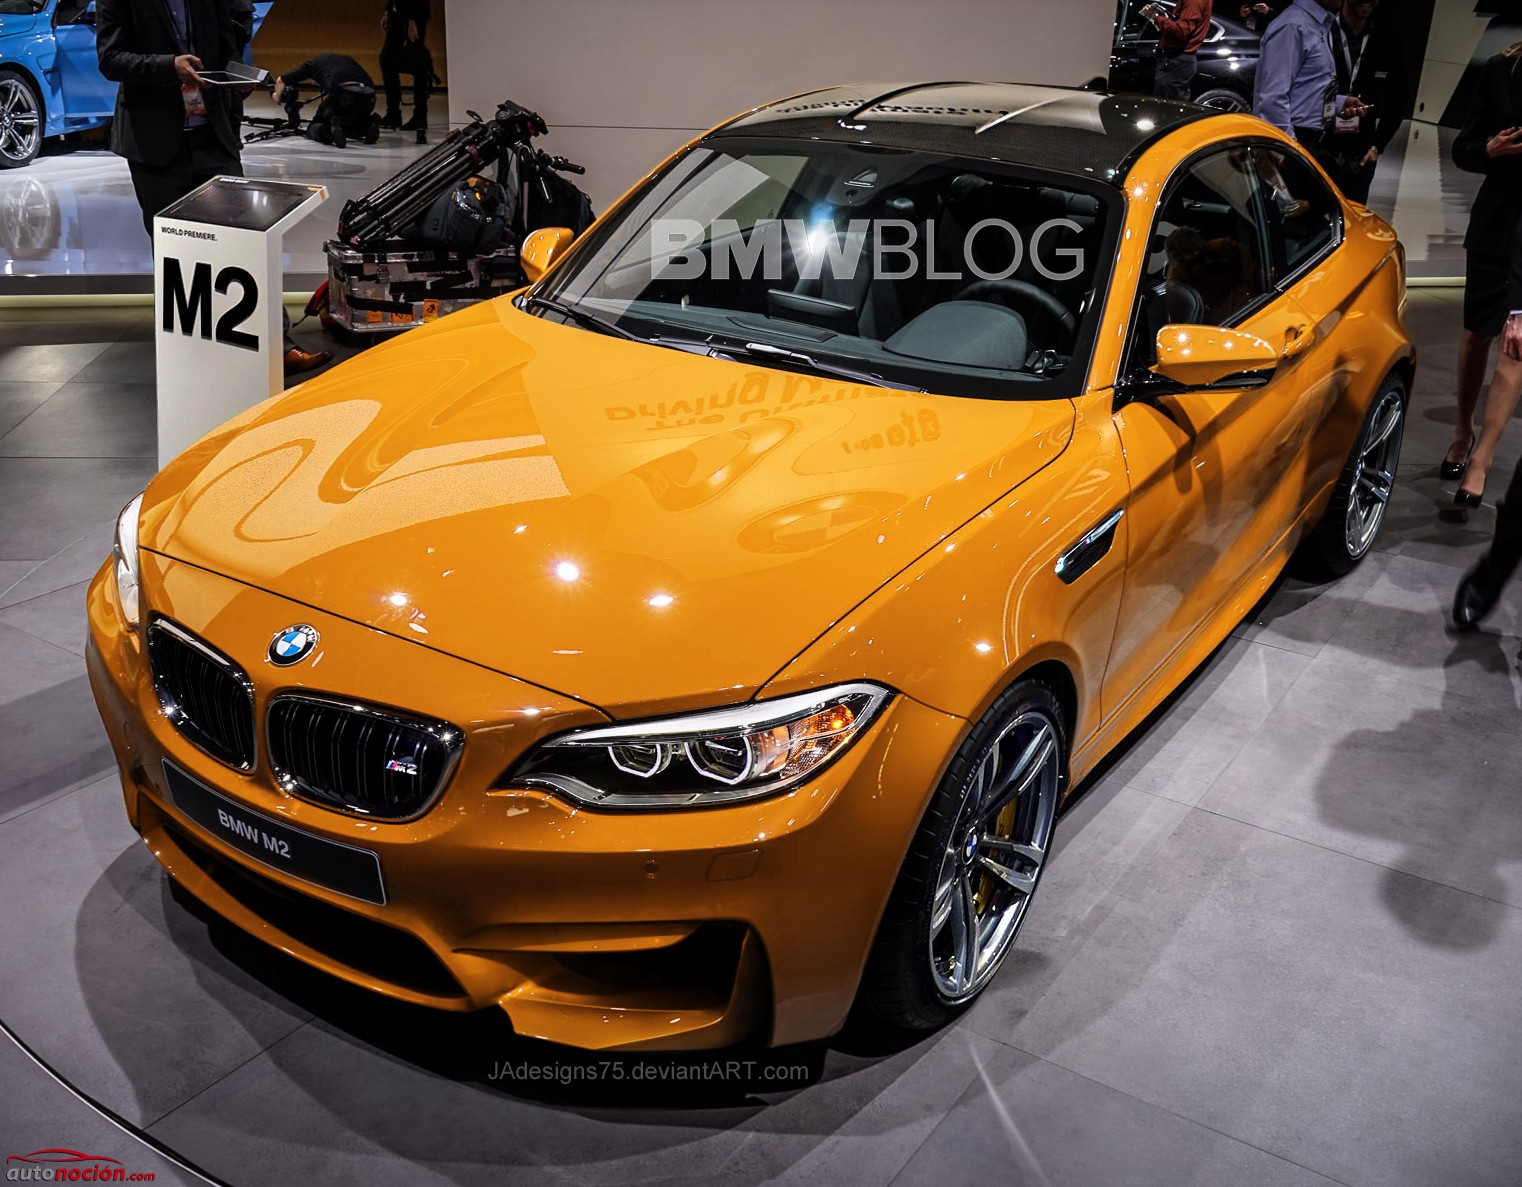 Desde el BMWBlog nos llega esta imagen del BMW M2, ¿será este su aspecto definitivo? Desde luego el color le sienta de maravilla.